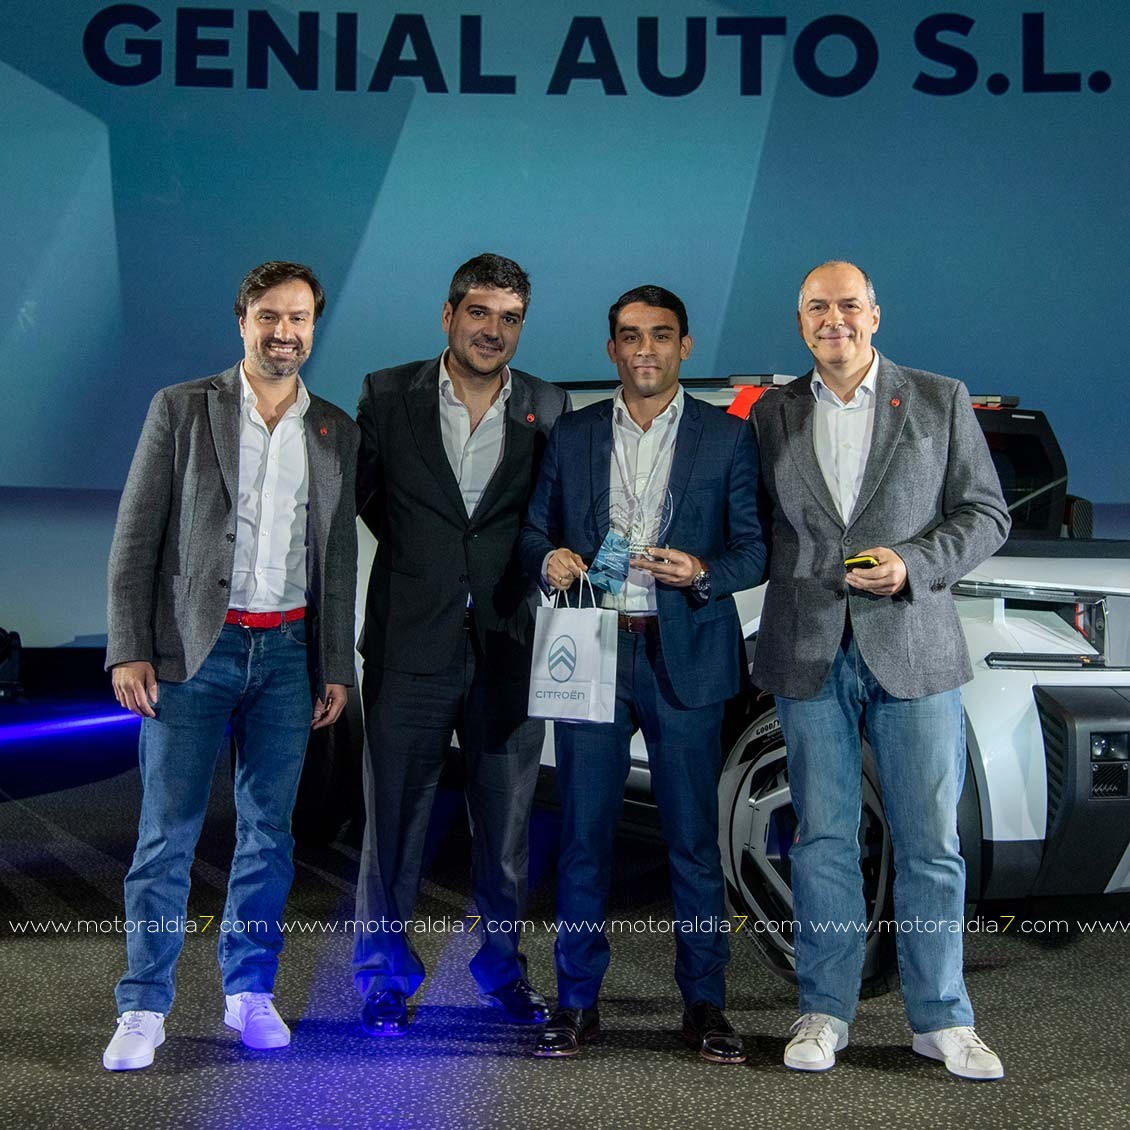 Citroën Genial Auto premiado como el mejor concesionario en Calidad Postventa